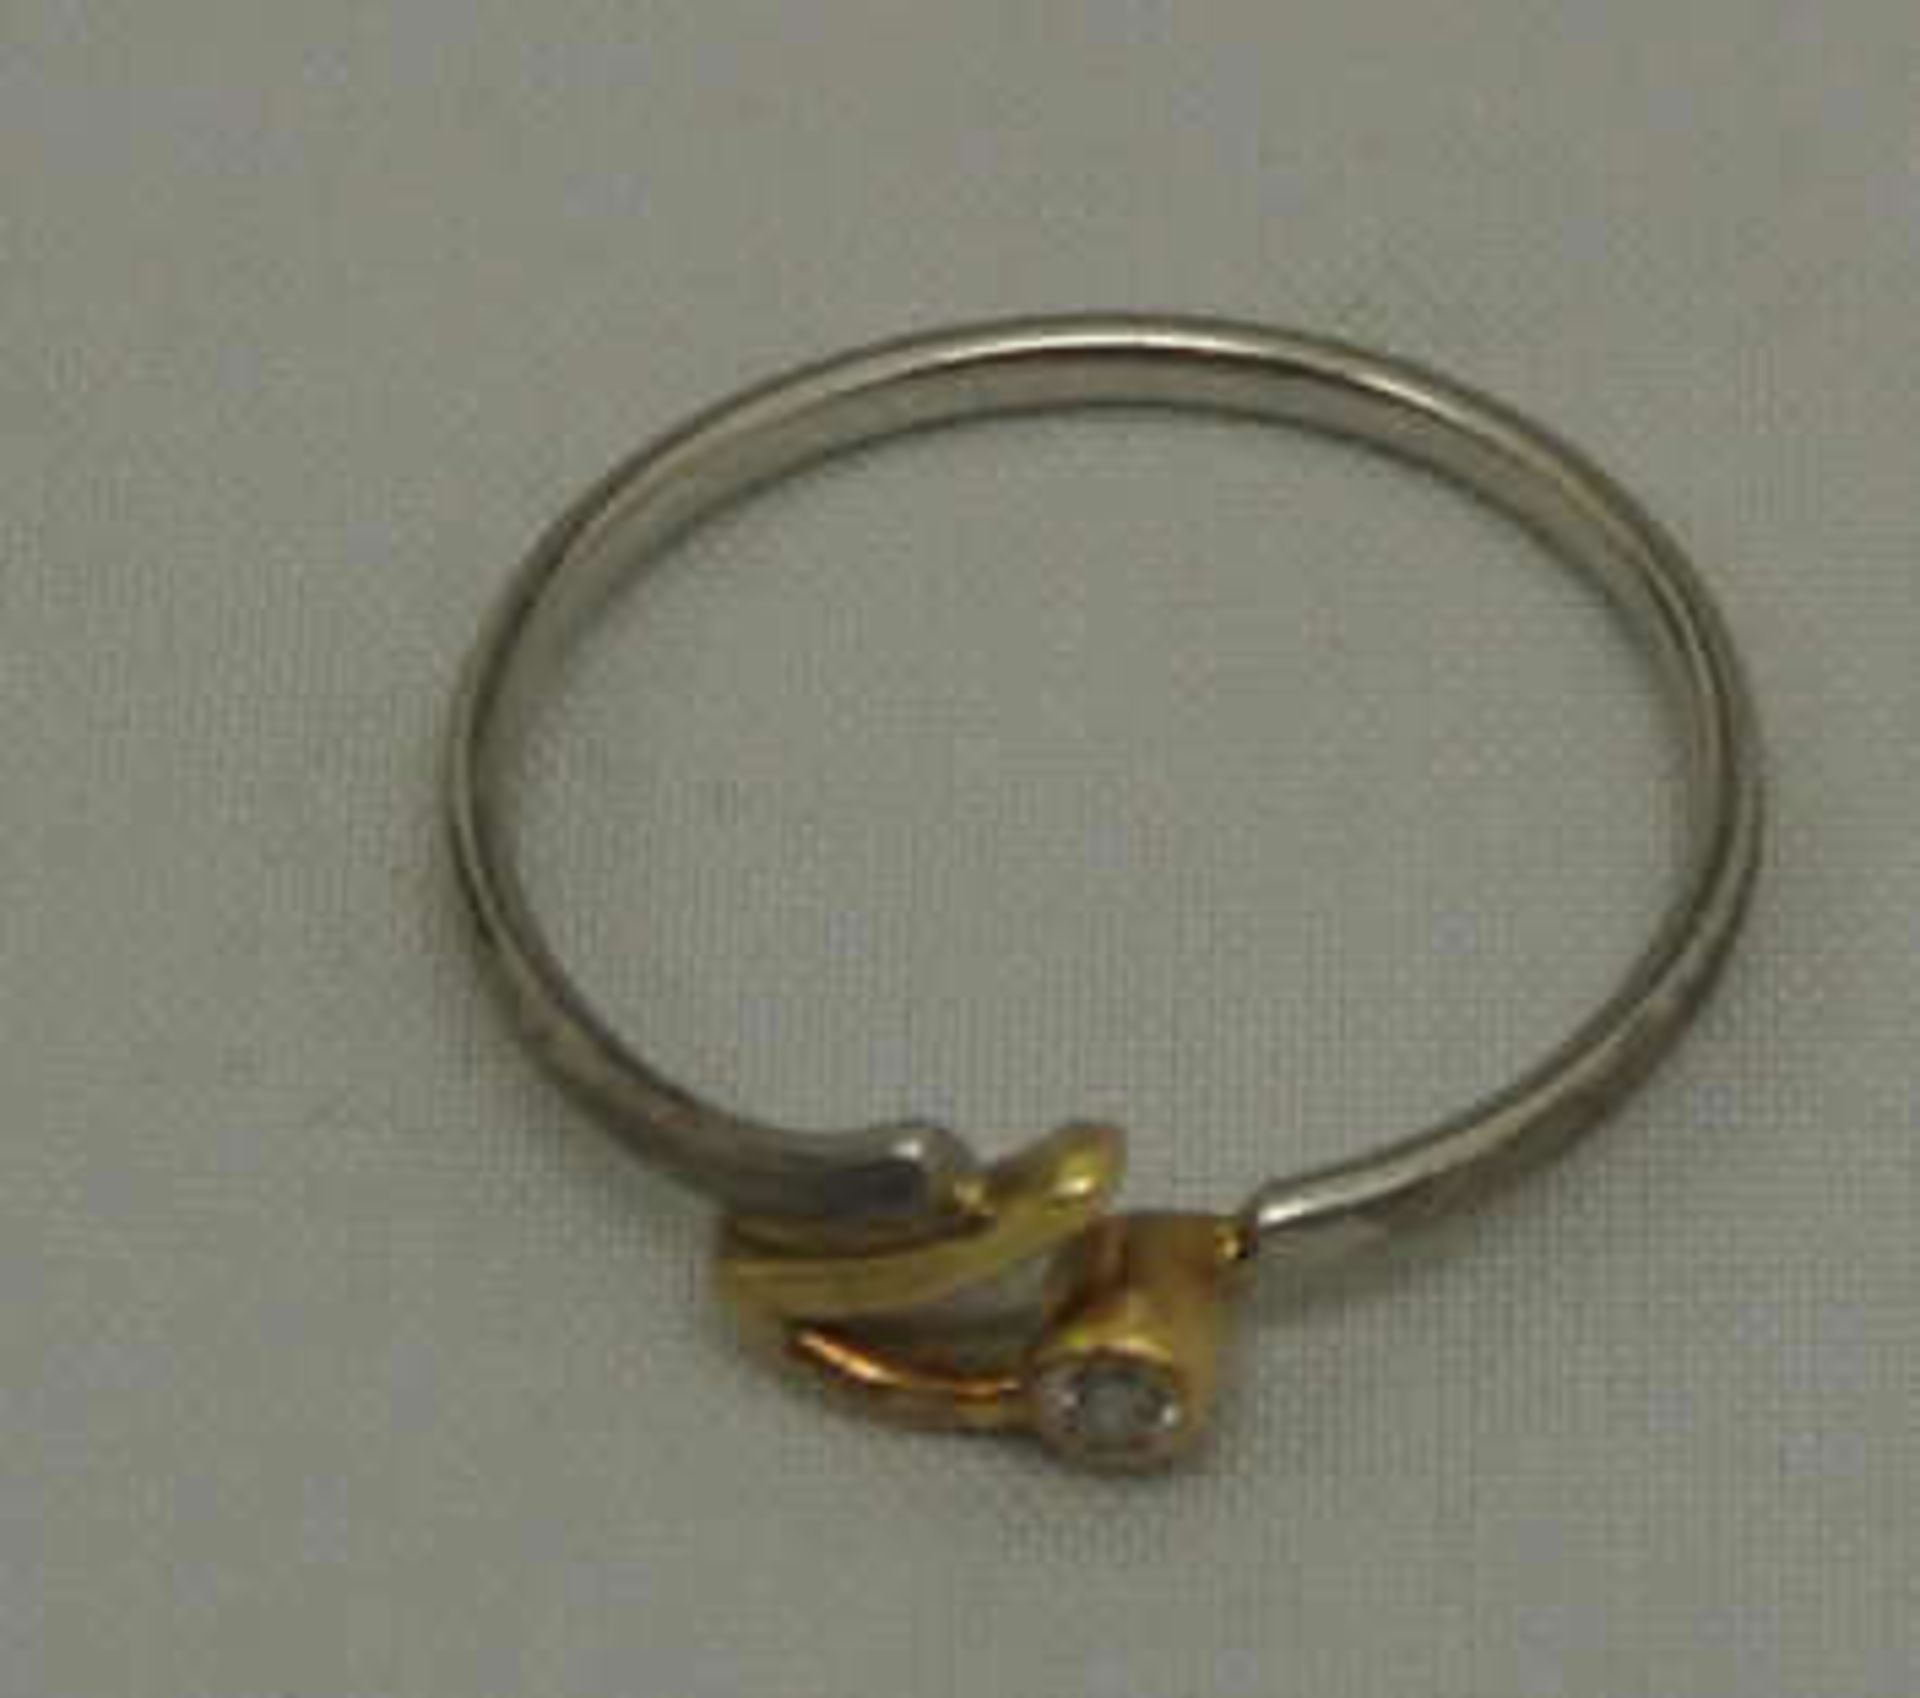 Damenring, Platin, besetzt mit 1 Diamant, Ringgröße 54, Gewicht ca. 1,9 gr Ladies ring, platinum, - Bild 2 aus 2